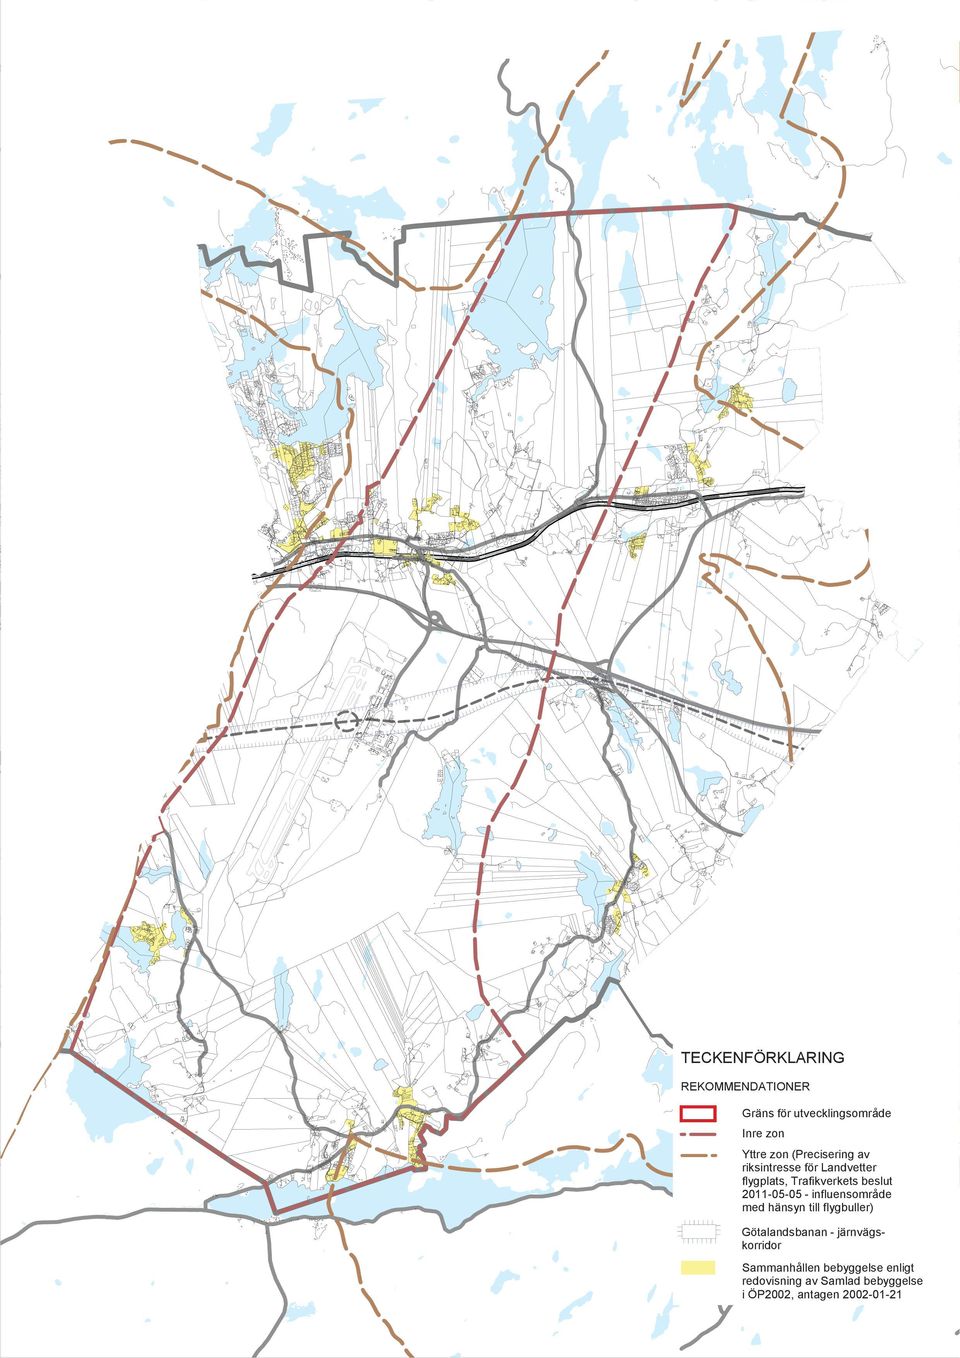 zon Yttre zon (Precisering av riksintresse för Landvetter flygplats, Trafikverkets beslut 2011-05-05 - influensområde med hänsyn till flygbuller)